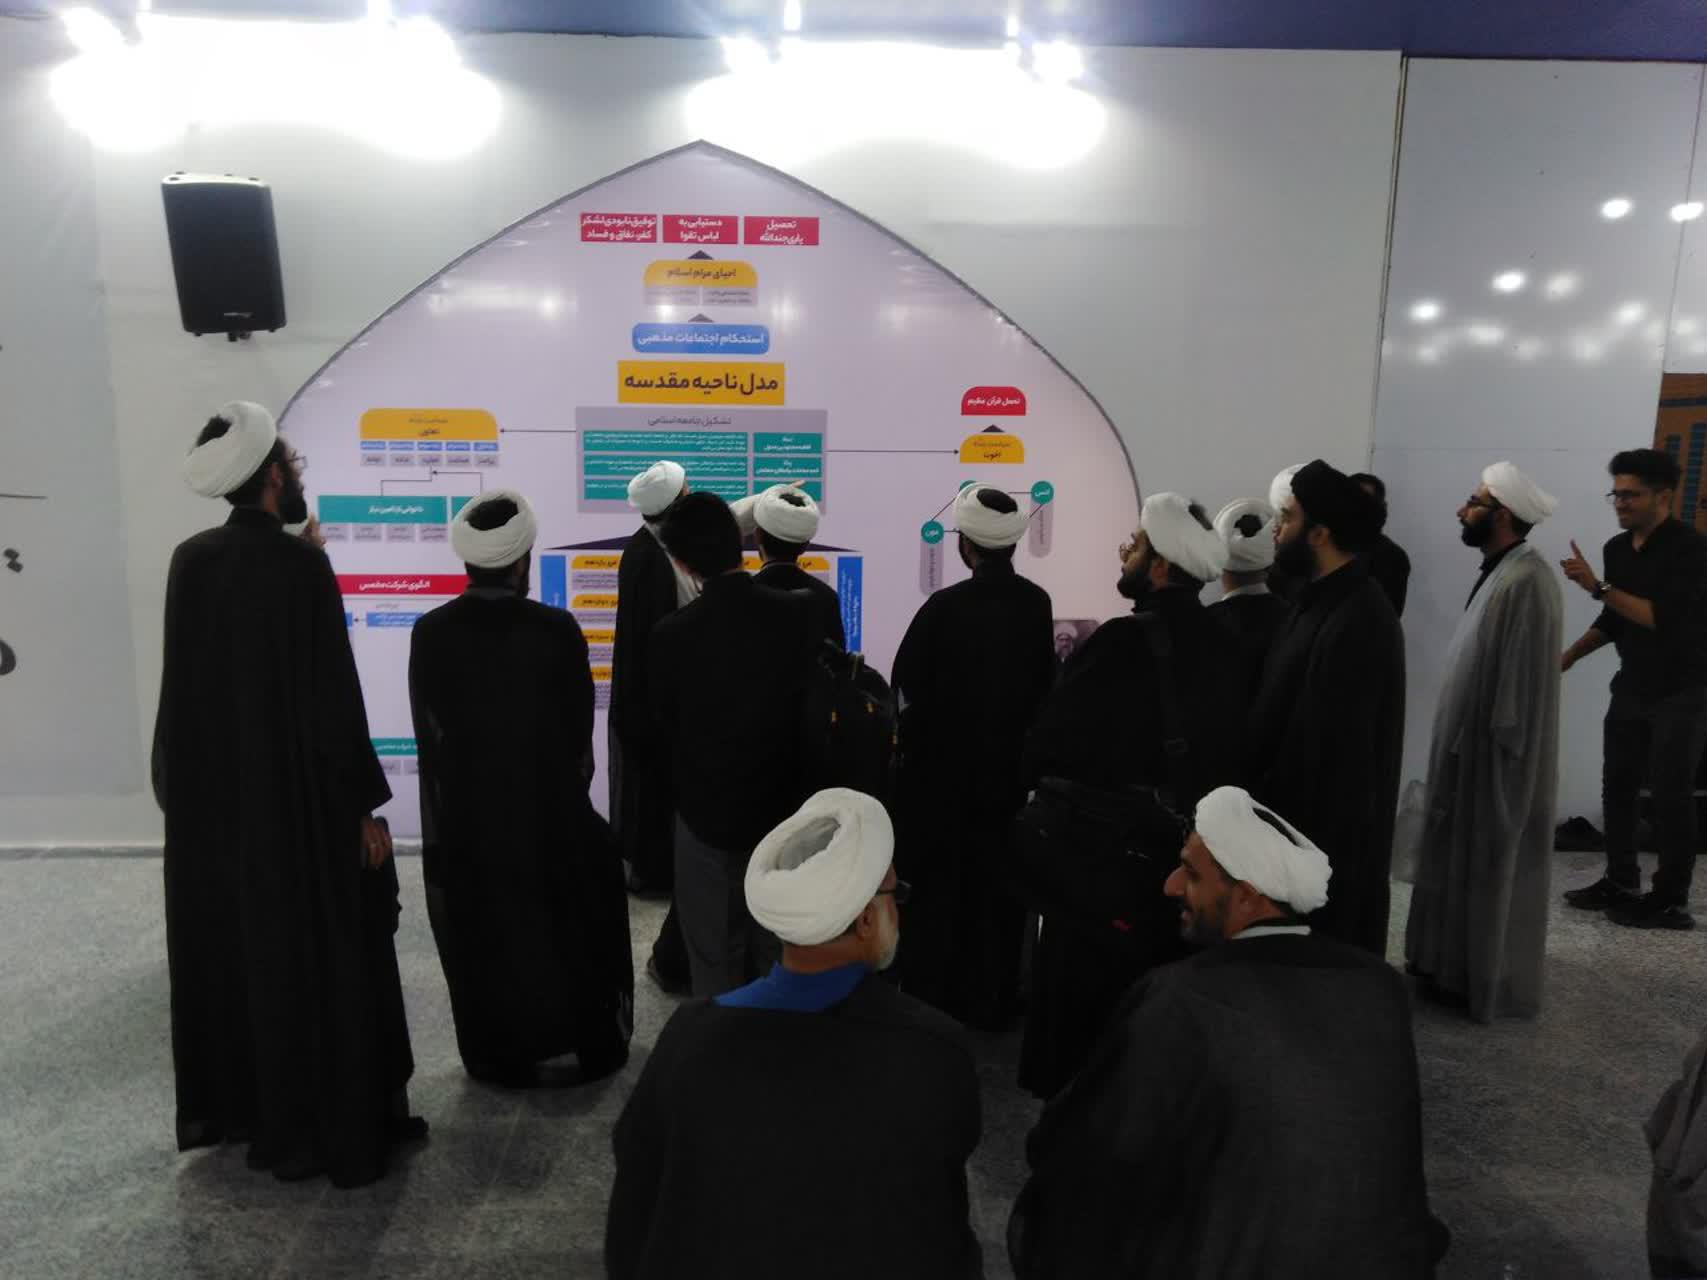 نمایشگاه «مسجد جامعه پرداز»؛ نقشه راهی برای ایجاد یک محله اسلامی